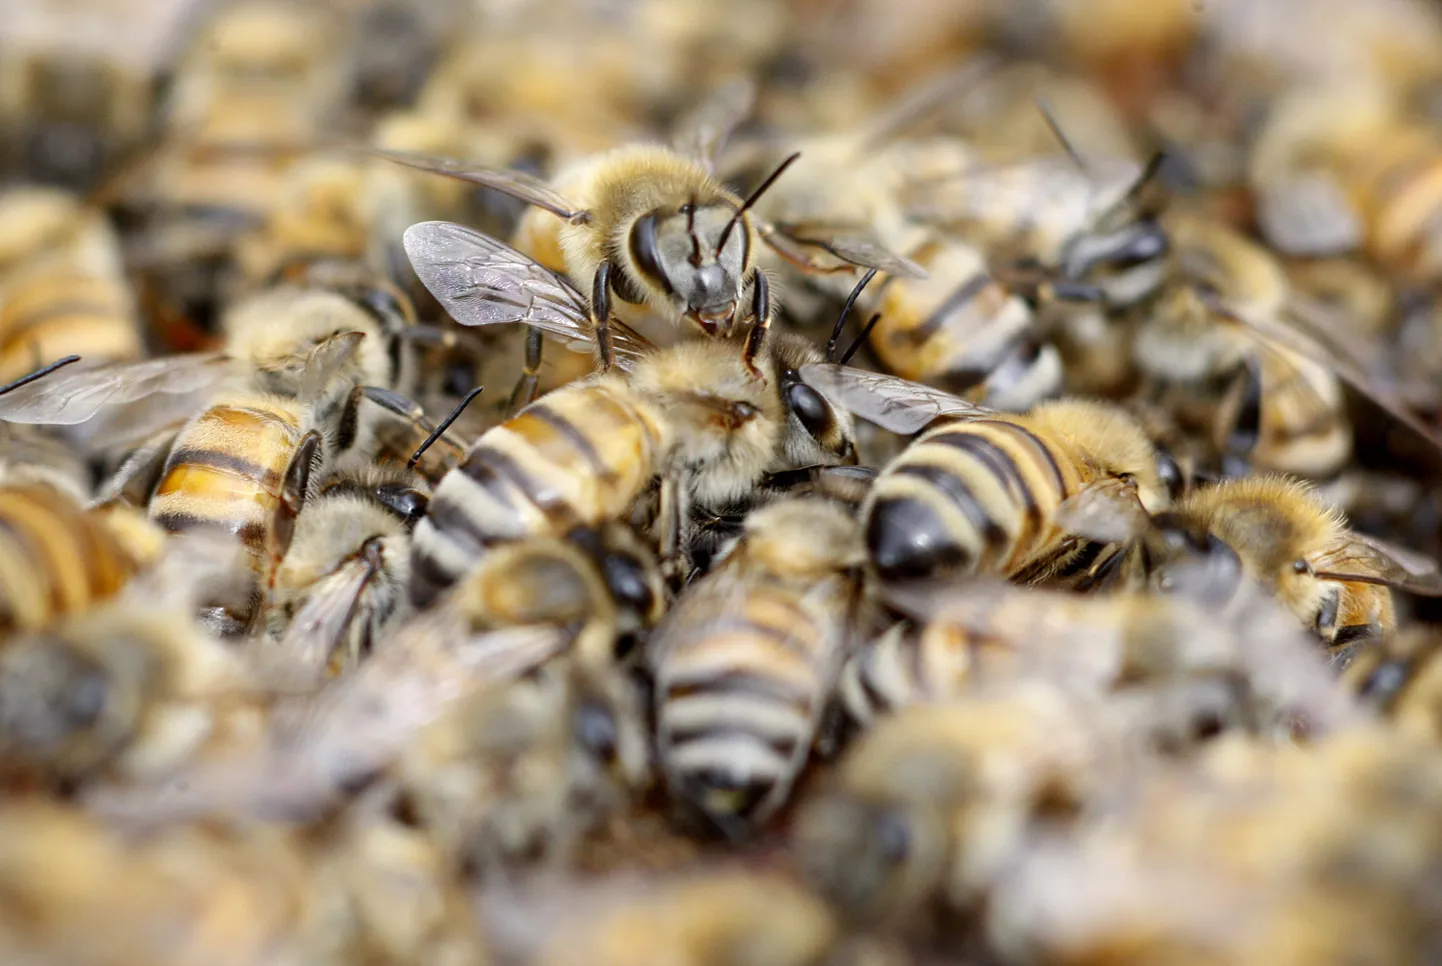 Mesilaste nõelamine kui ravimeetod?